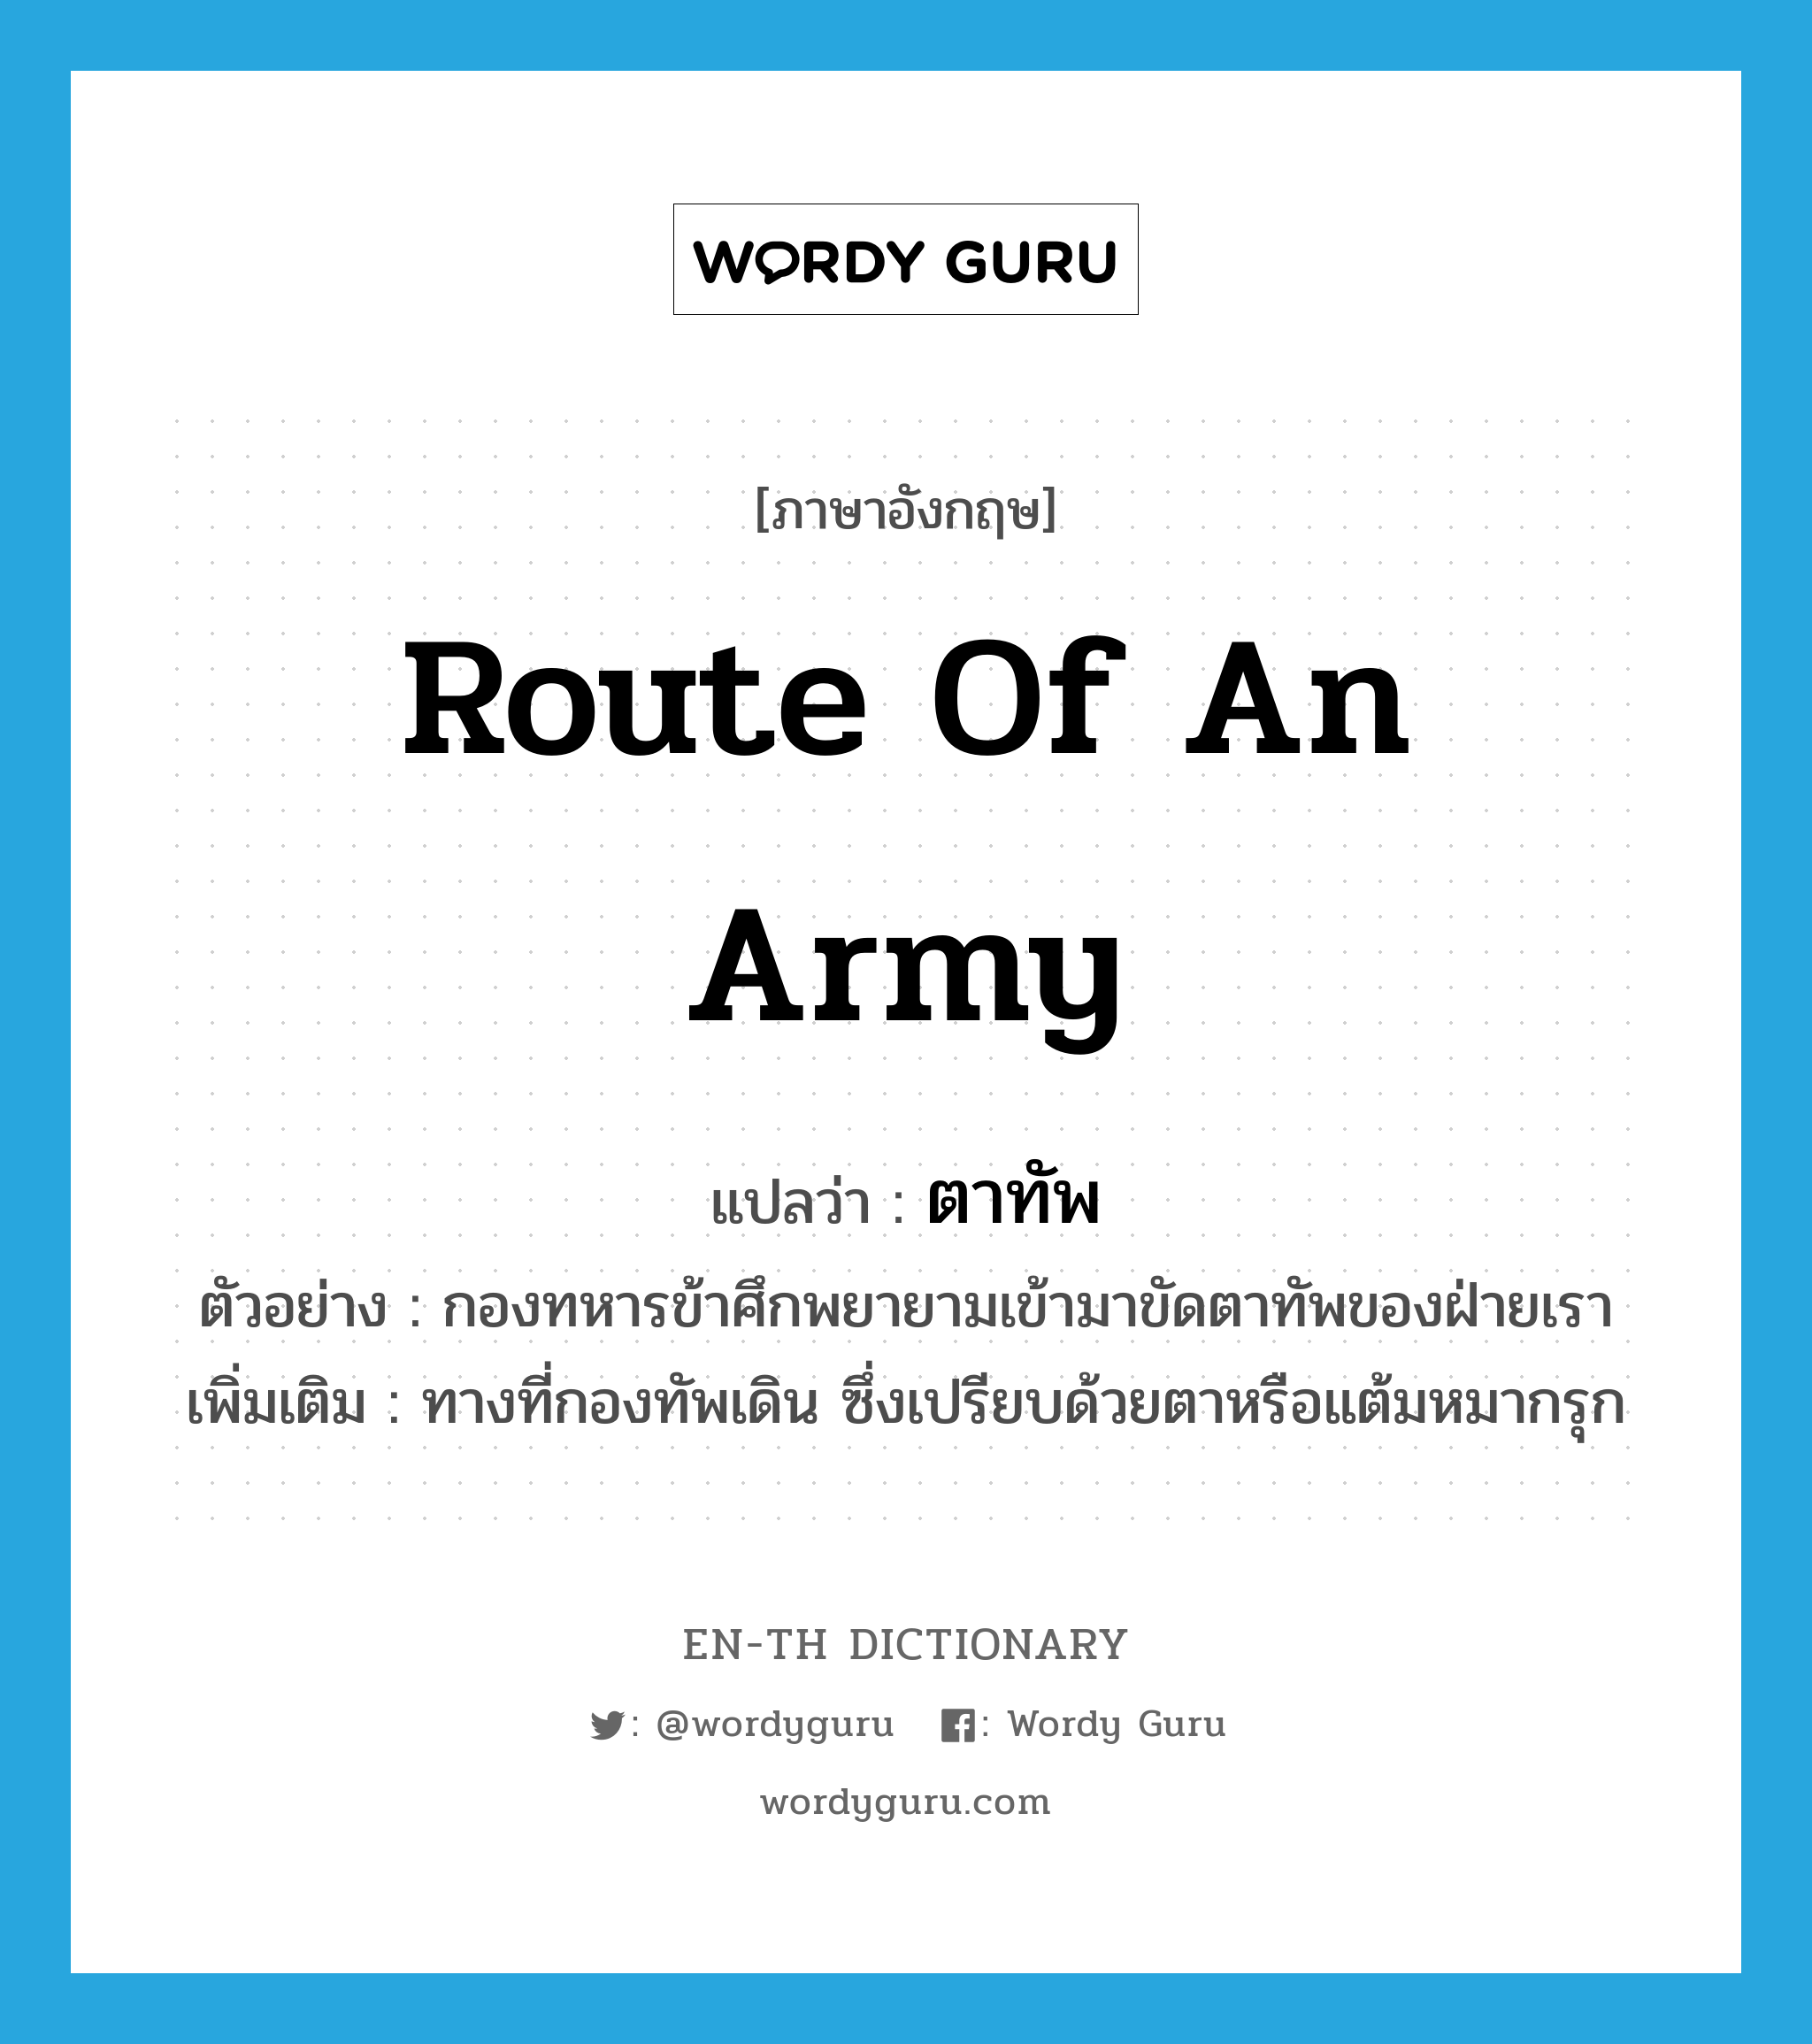 route of an army แปลว่า?, คำศัพท์ภาษาอังกฤษ route of an army แปลว่า ตาทัพ ประเภท N ตัวอย่าง กองทหารข้าศึกพยายามเข้ามาขัดตาทัพของฝ่ายเรา เพิ่มเติม ทางที่กองทัพเดิน ซึ่งเปรียบด้วยตาหรือแต้มหมากรุก หมวด N